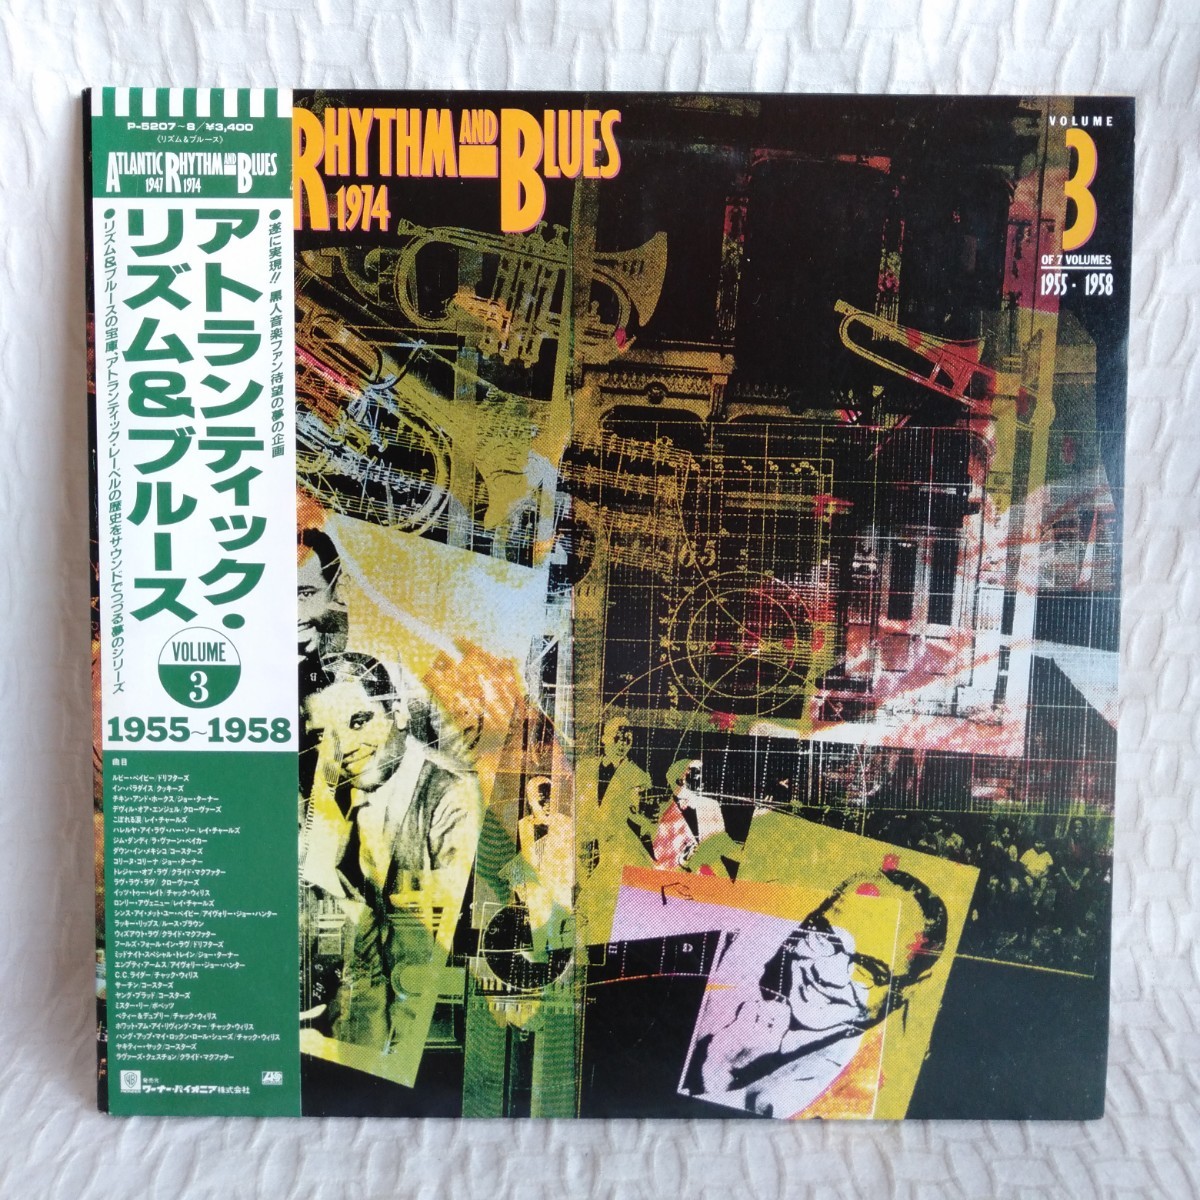 た403 ATLANTIC RHYTHM & BLUES 1947-1974 VOLUME 3 1955-1958 レコード LP EP 何枚でも送料一律1,000円 再生未確認_画像1